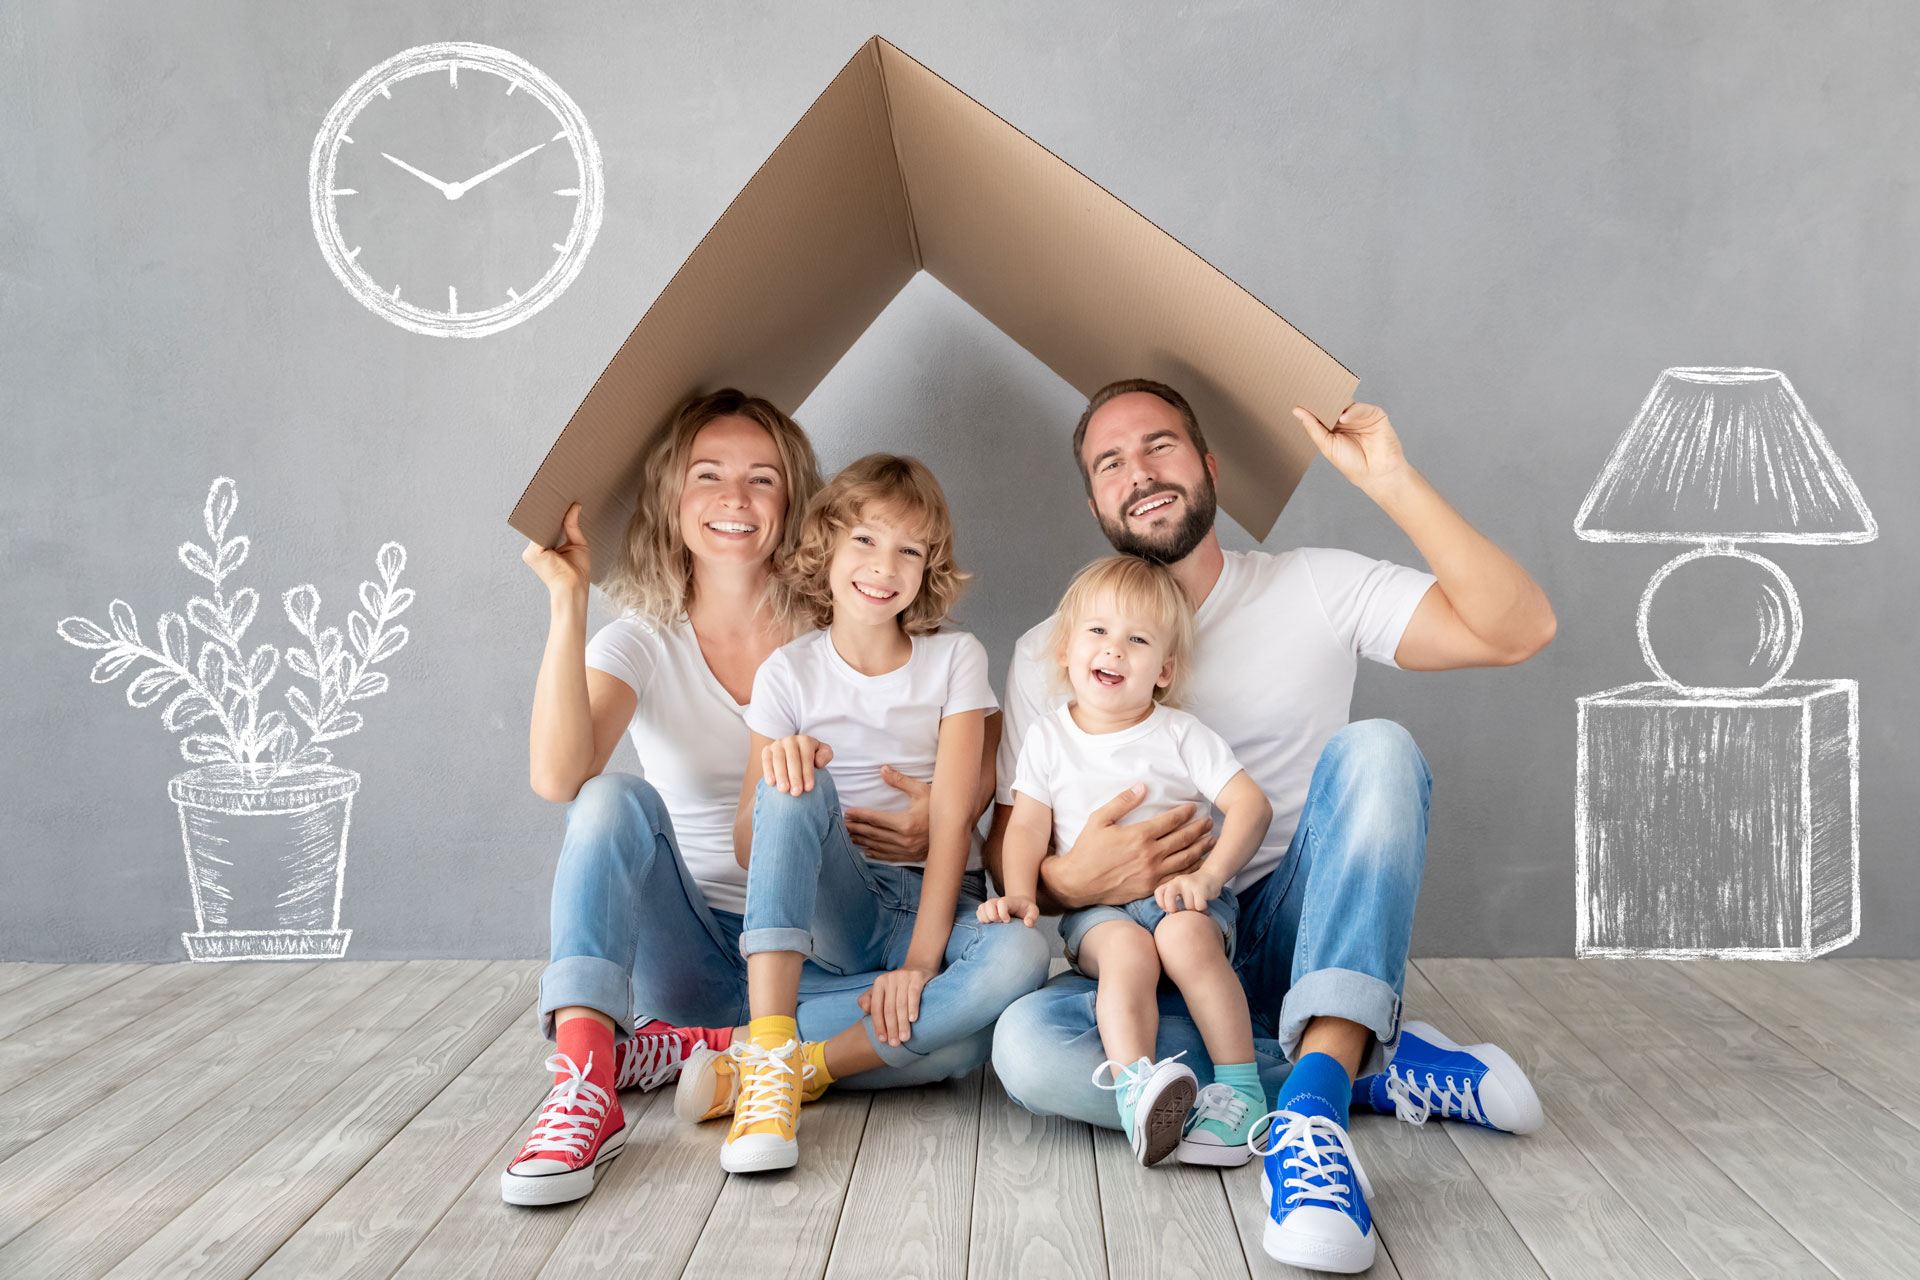 Familia feliz sosteniendo un techo de cartón, simulando su hogar.